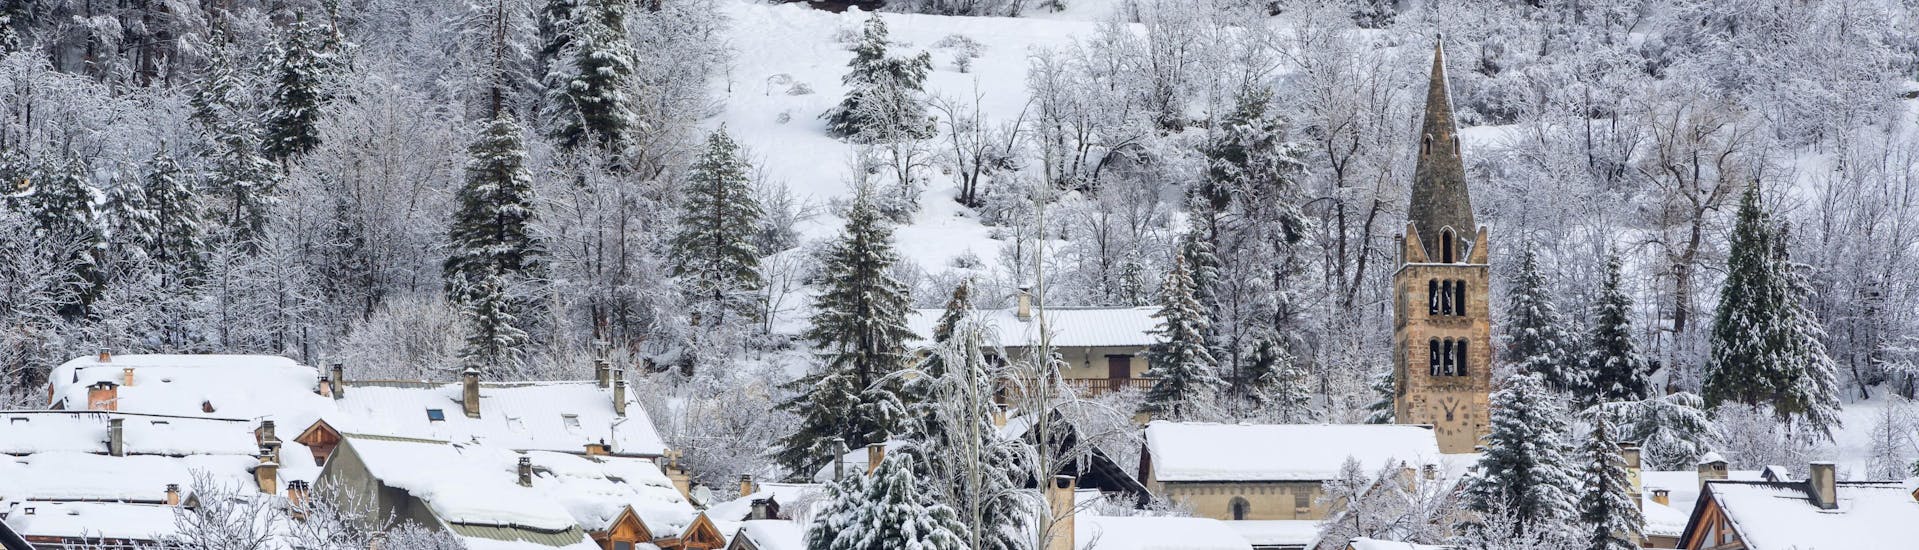 Pequeño pueblo de Serre-Chevalier Villeneuve cubierto de nieve.